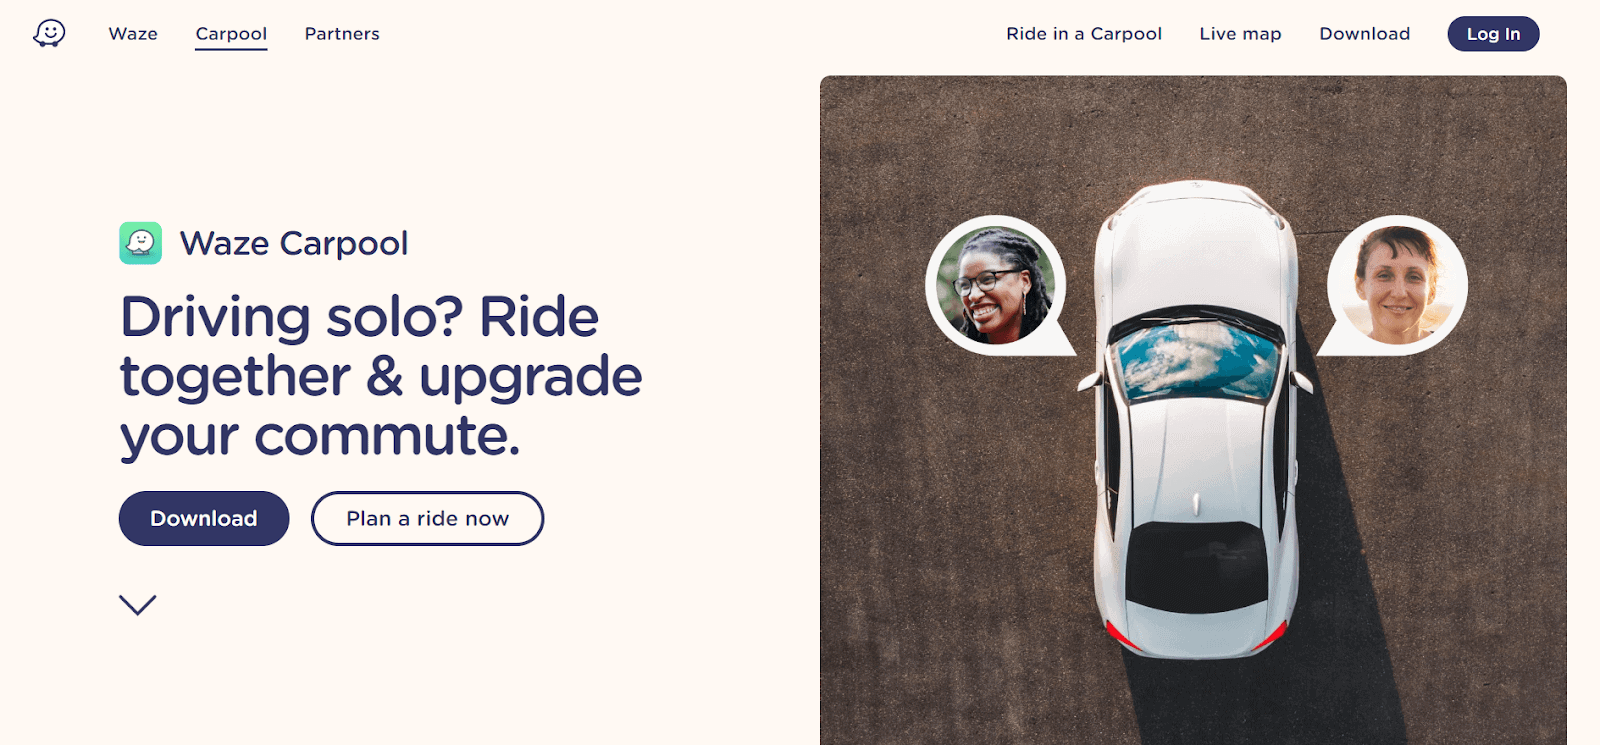 Waze Carpool homepage